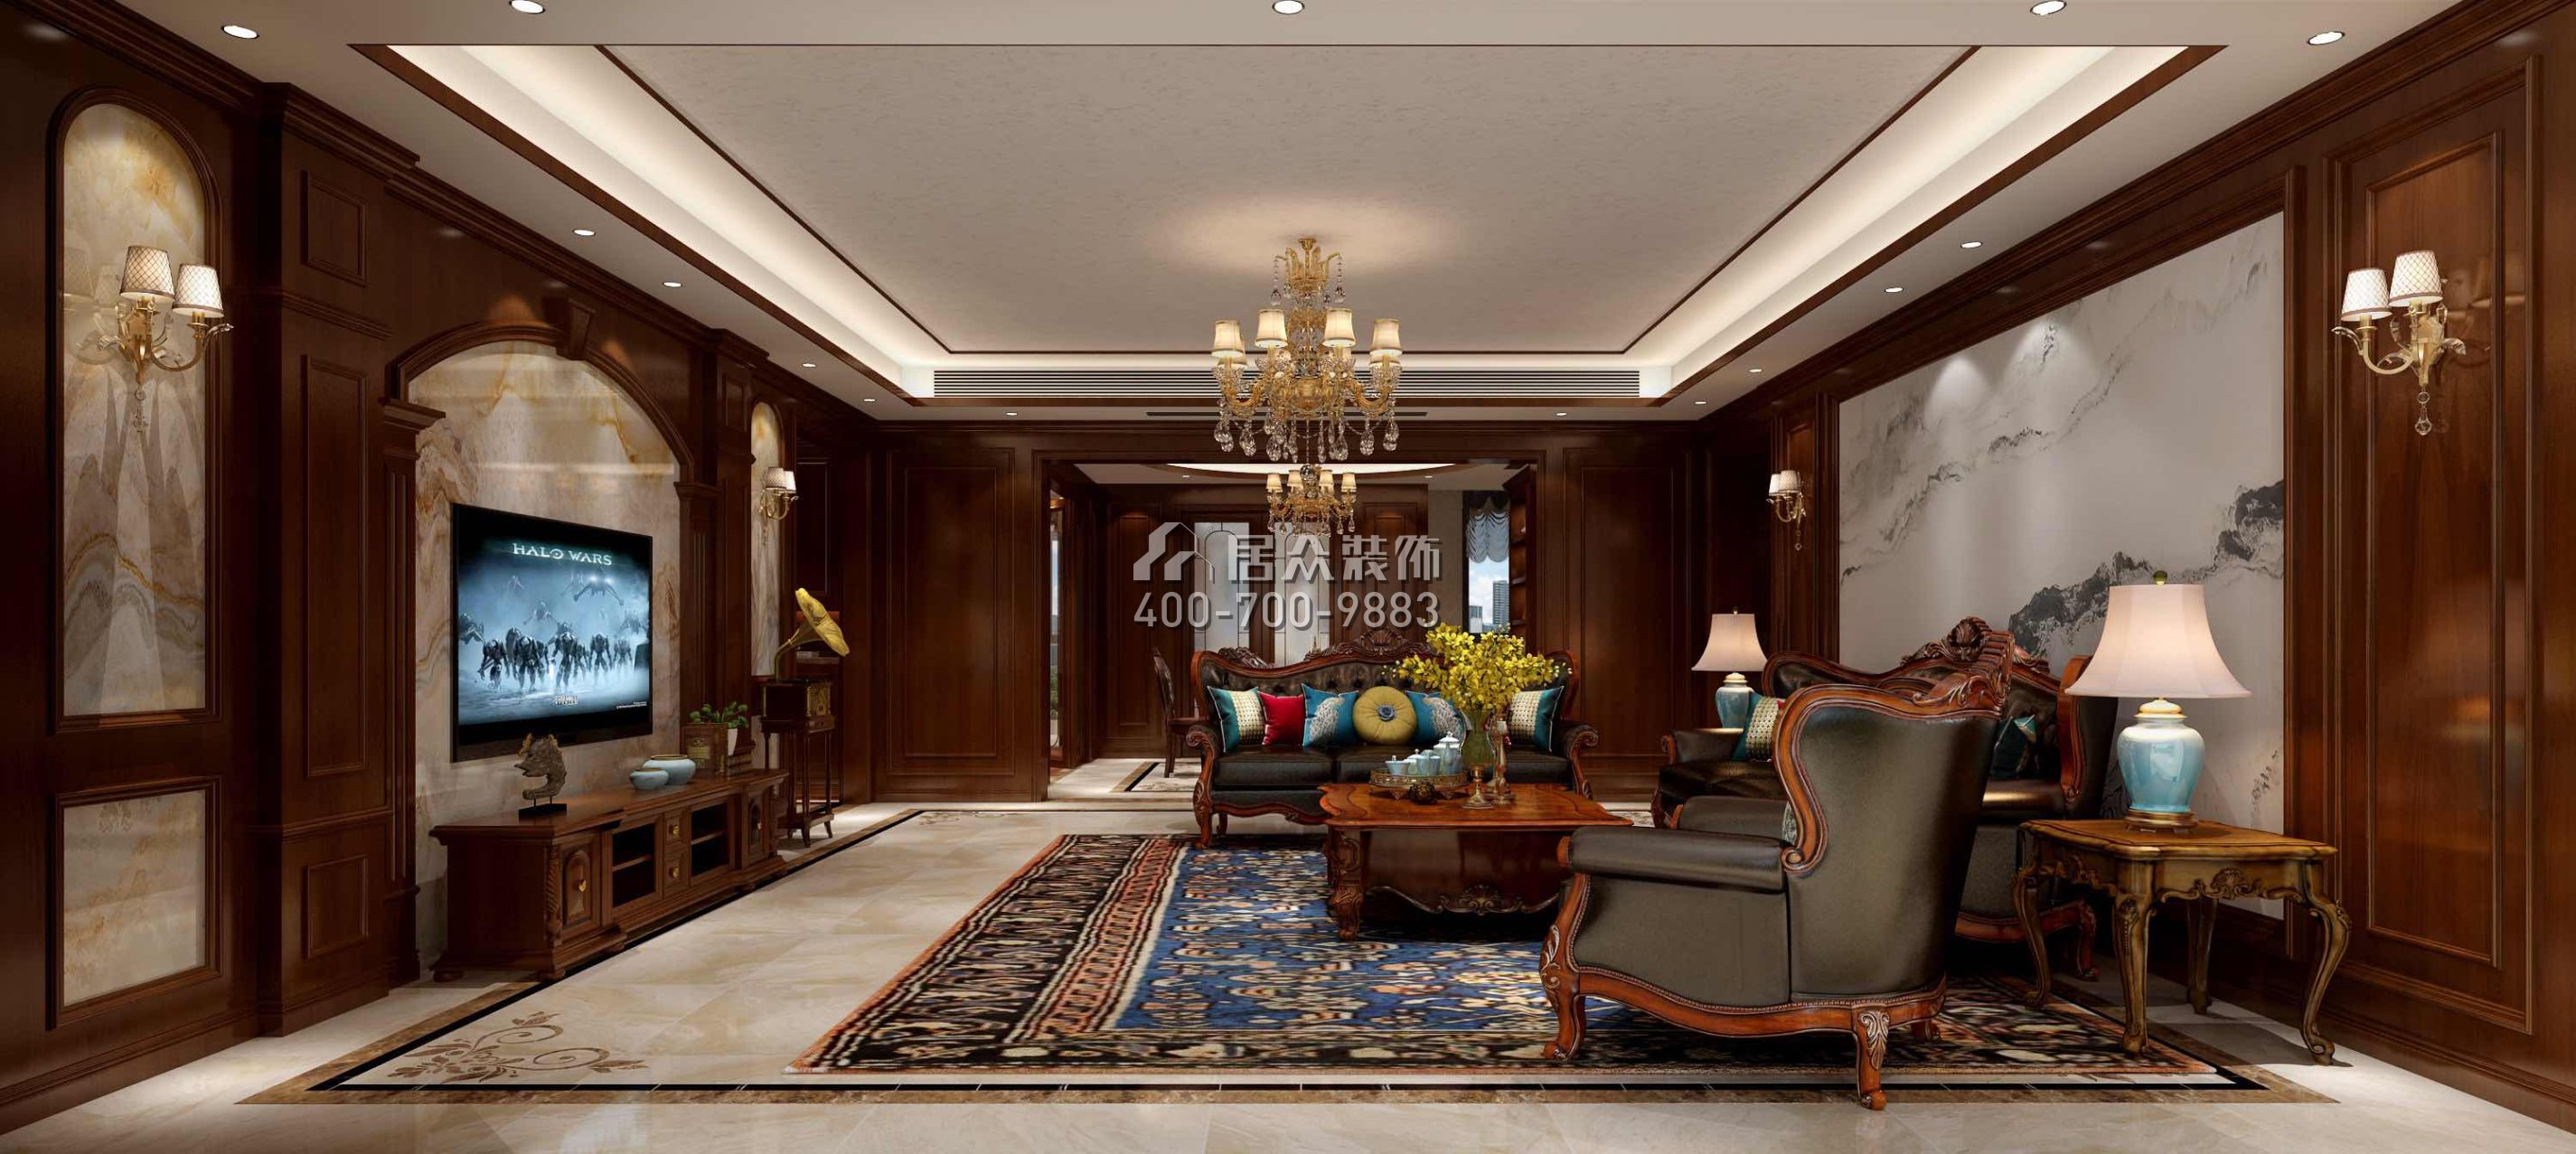 蘭江山第一期200平方米美式風格平層戶型客廳裝修效果圖